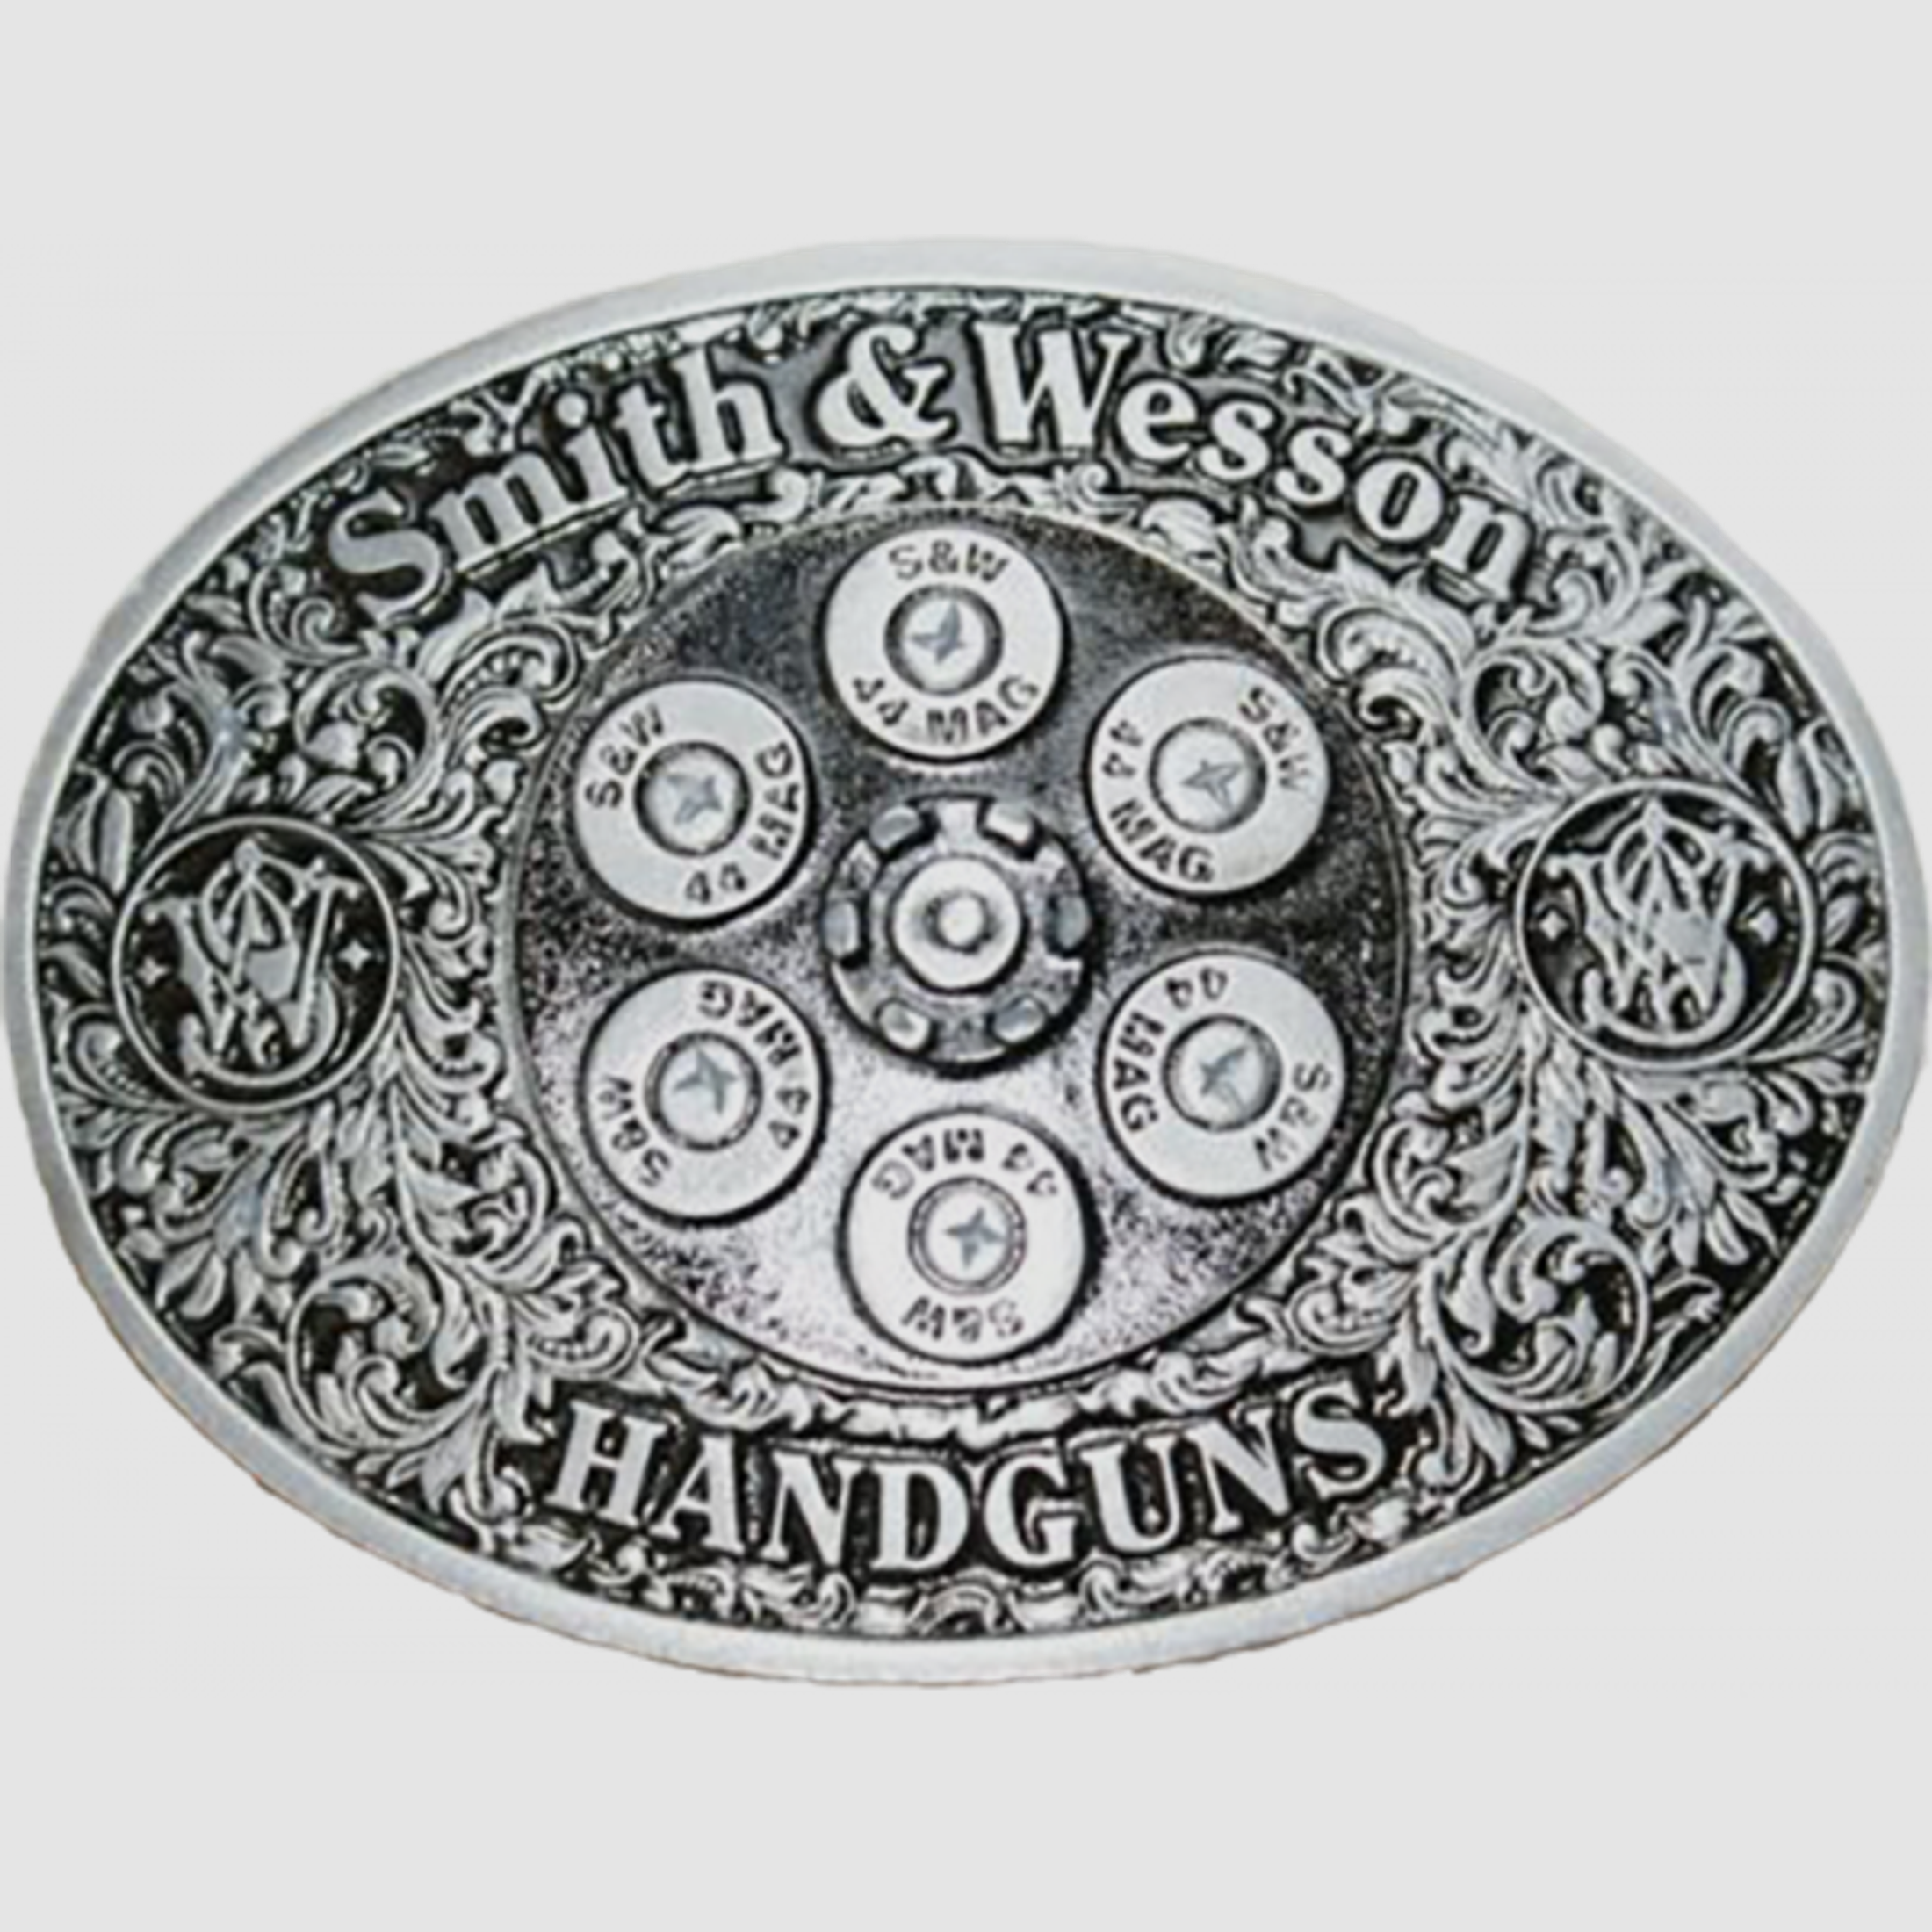 Smith & Wesson Gürtelschnalle